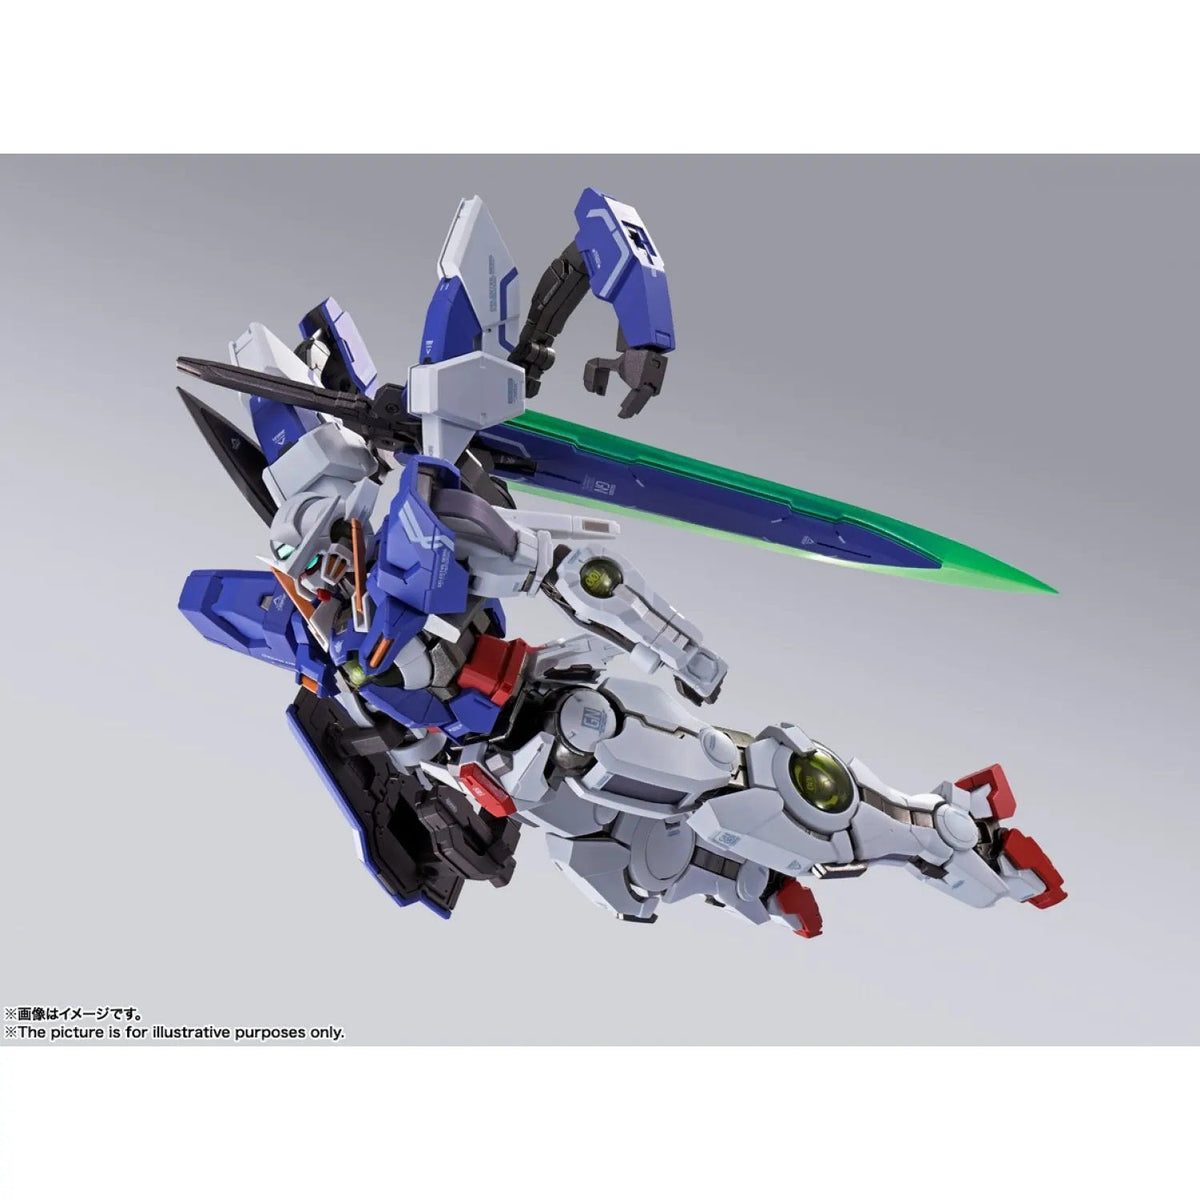 Metal Build Gundam Devise Exia-Bandai-Ace Cards &amp; Collectibles